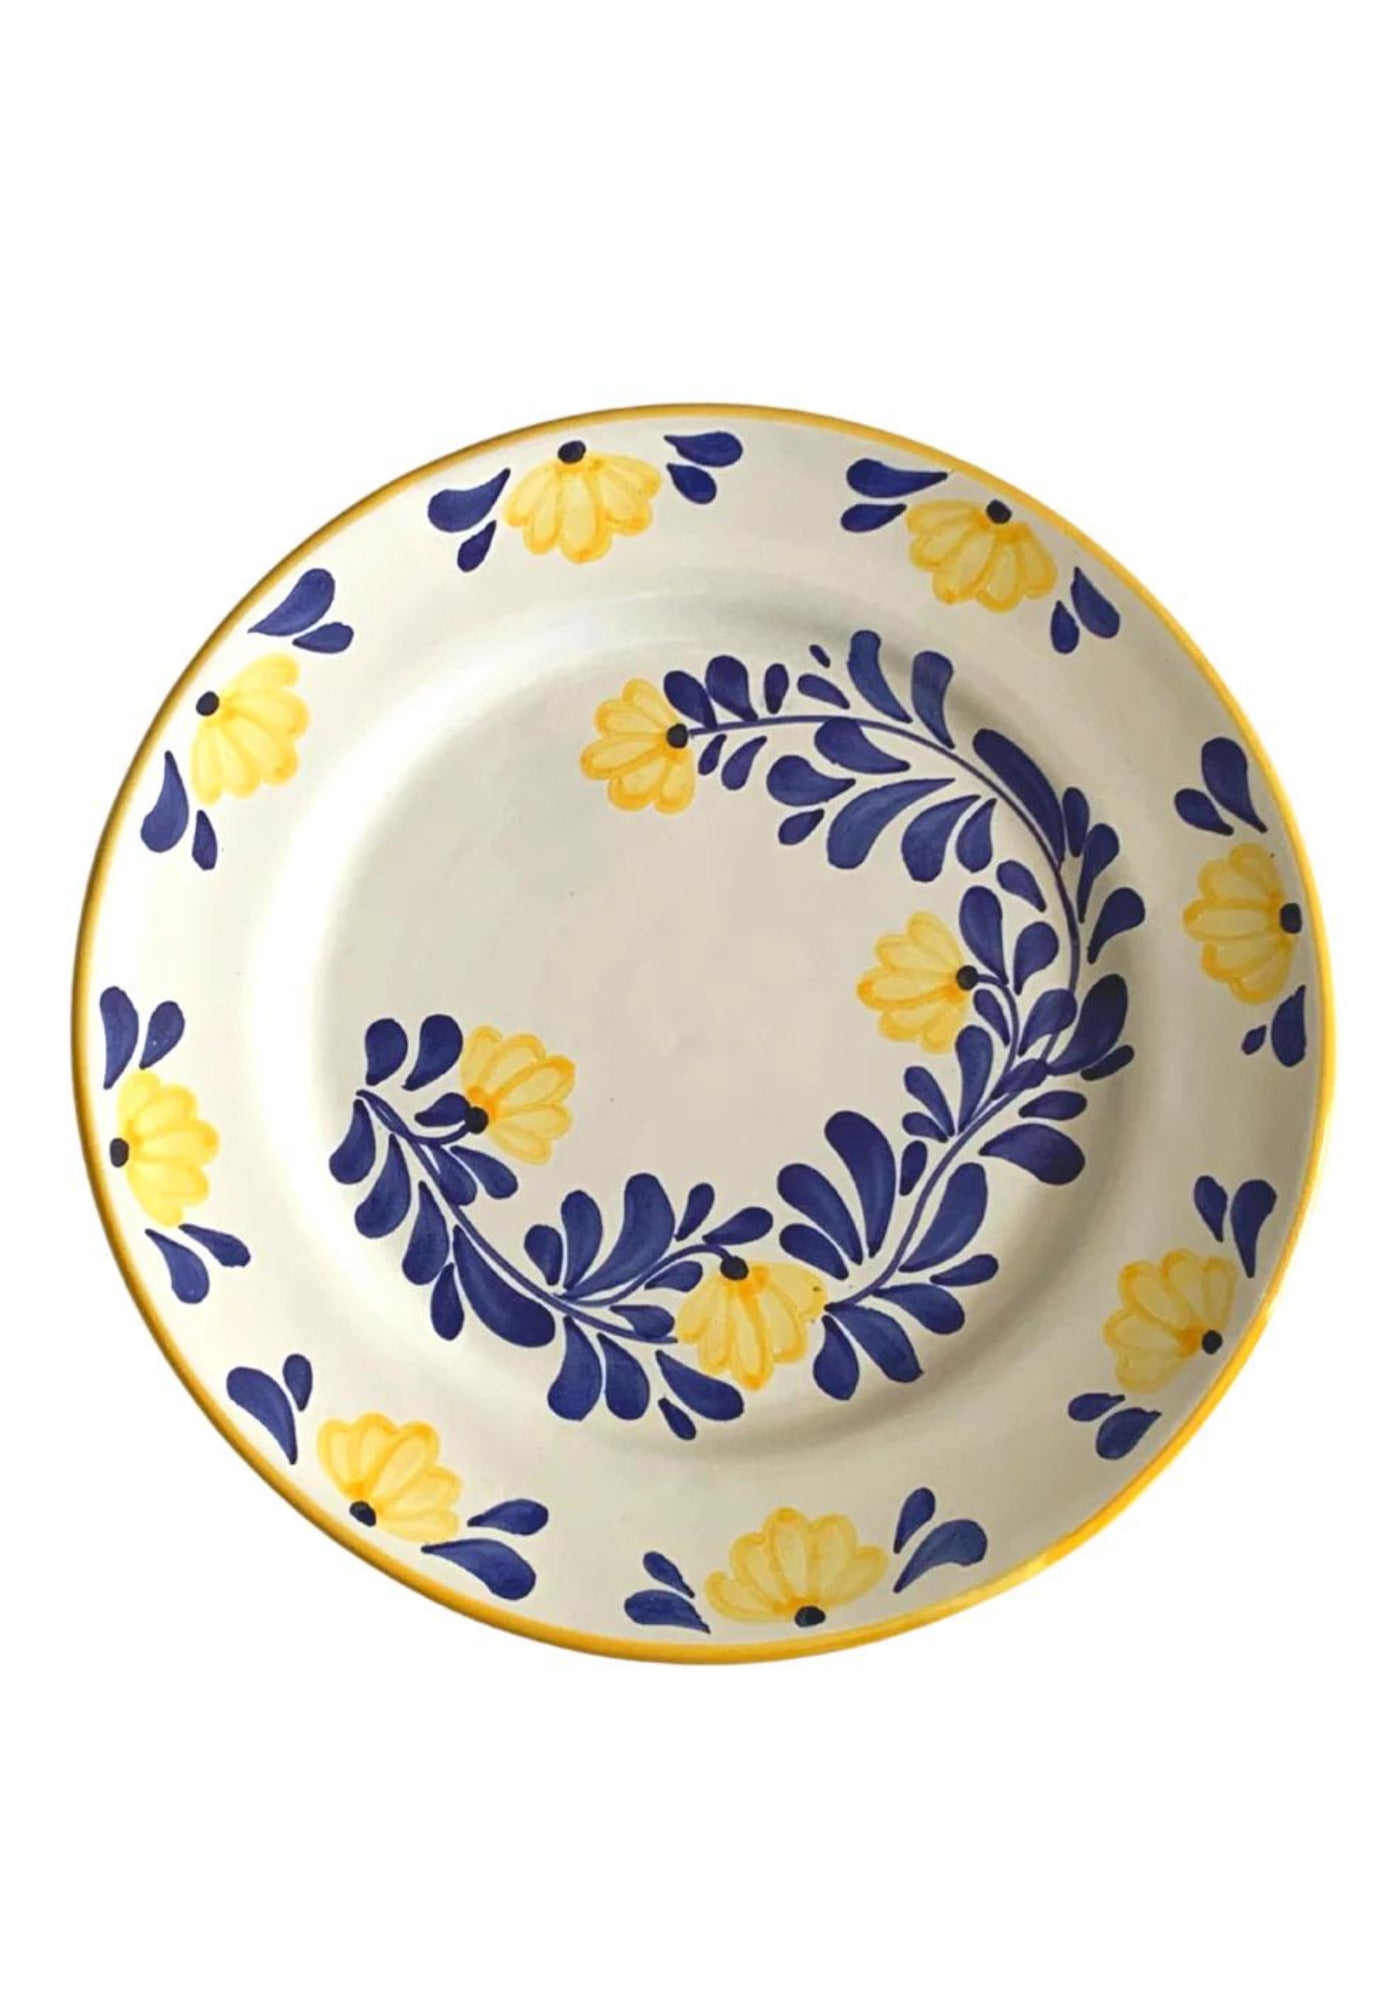 L'assiette creuse en céramique à motif fleurs bleu et jaune de chez Molleni